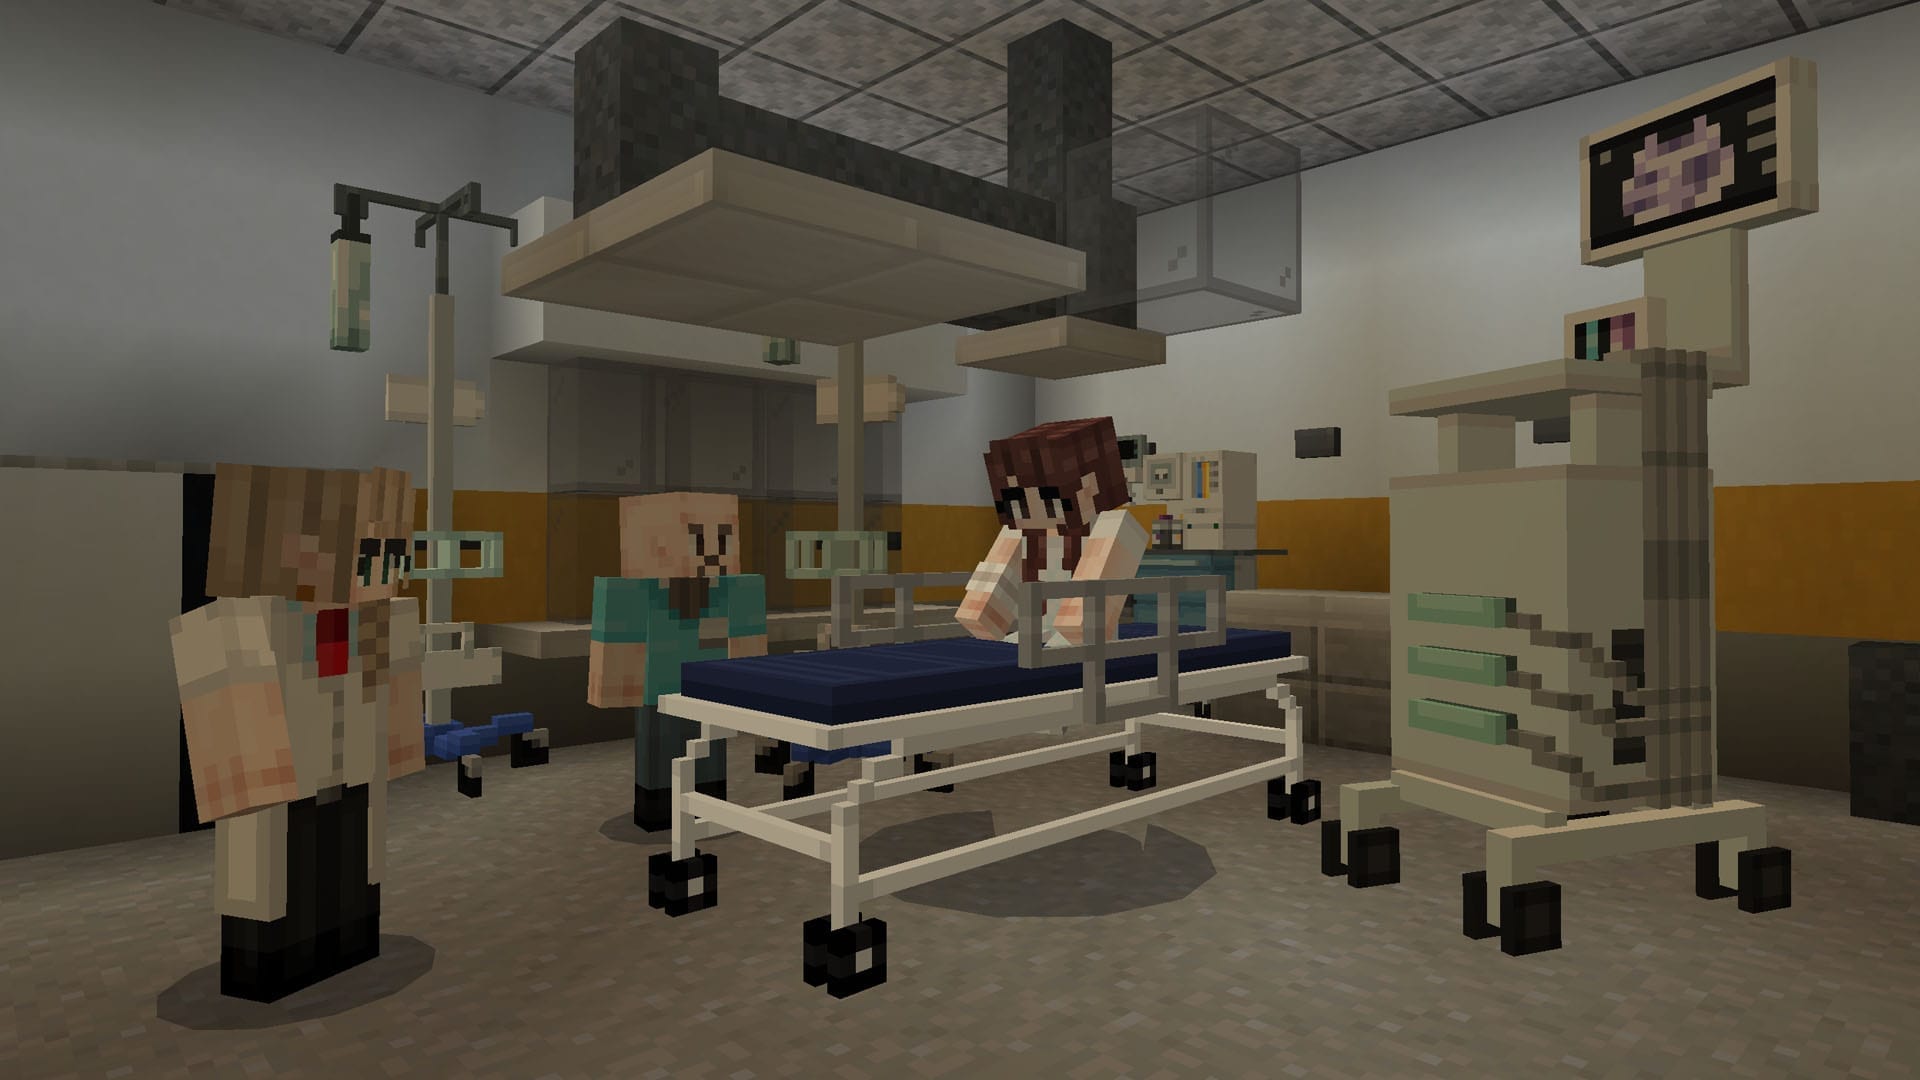 Hallmark Hospital - Roleplay Minecraft Aurrora